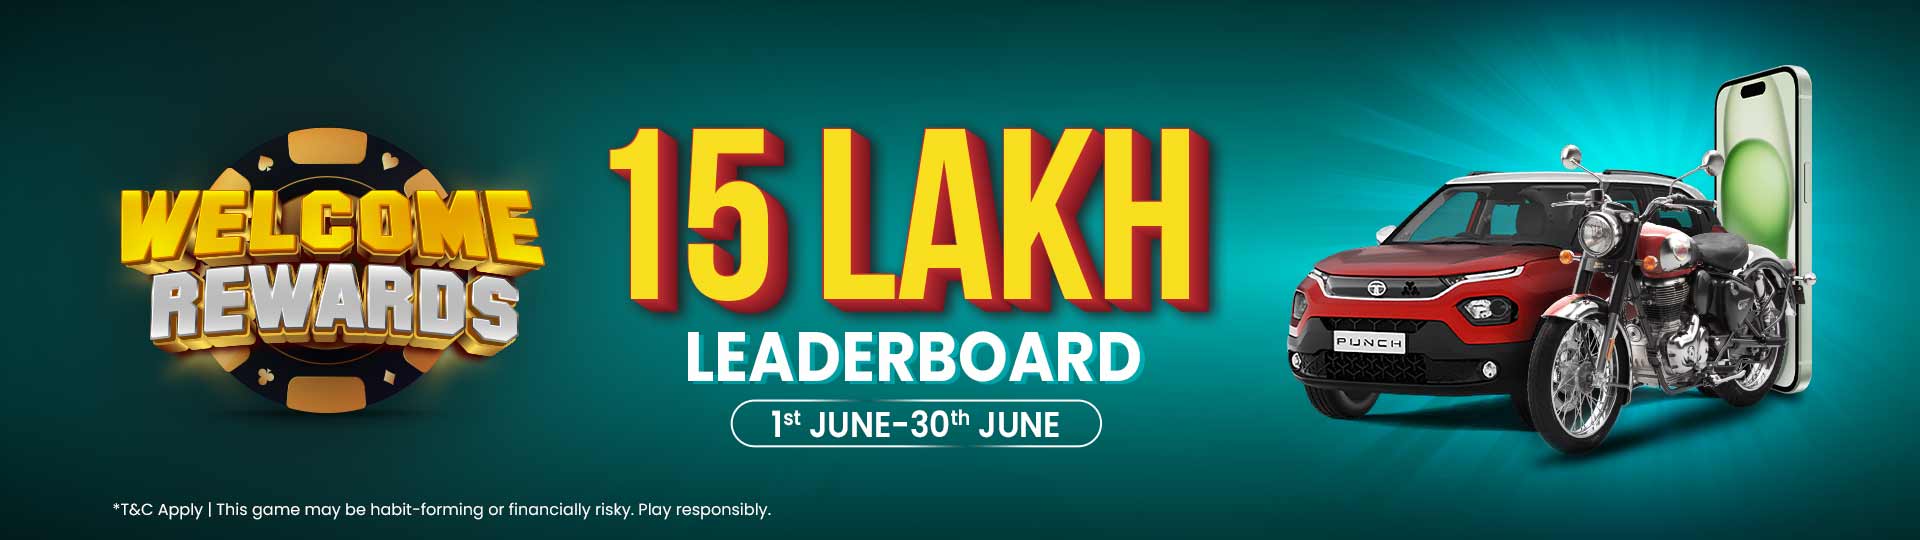 15 Lakh Leaderboard Promotion